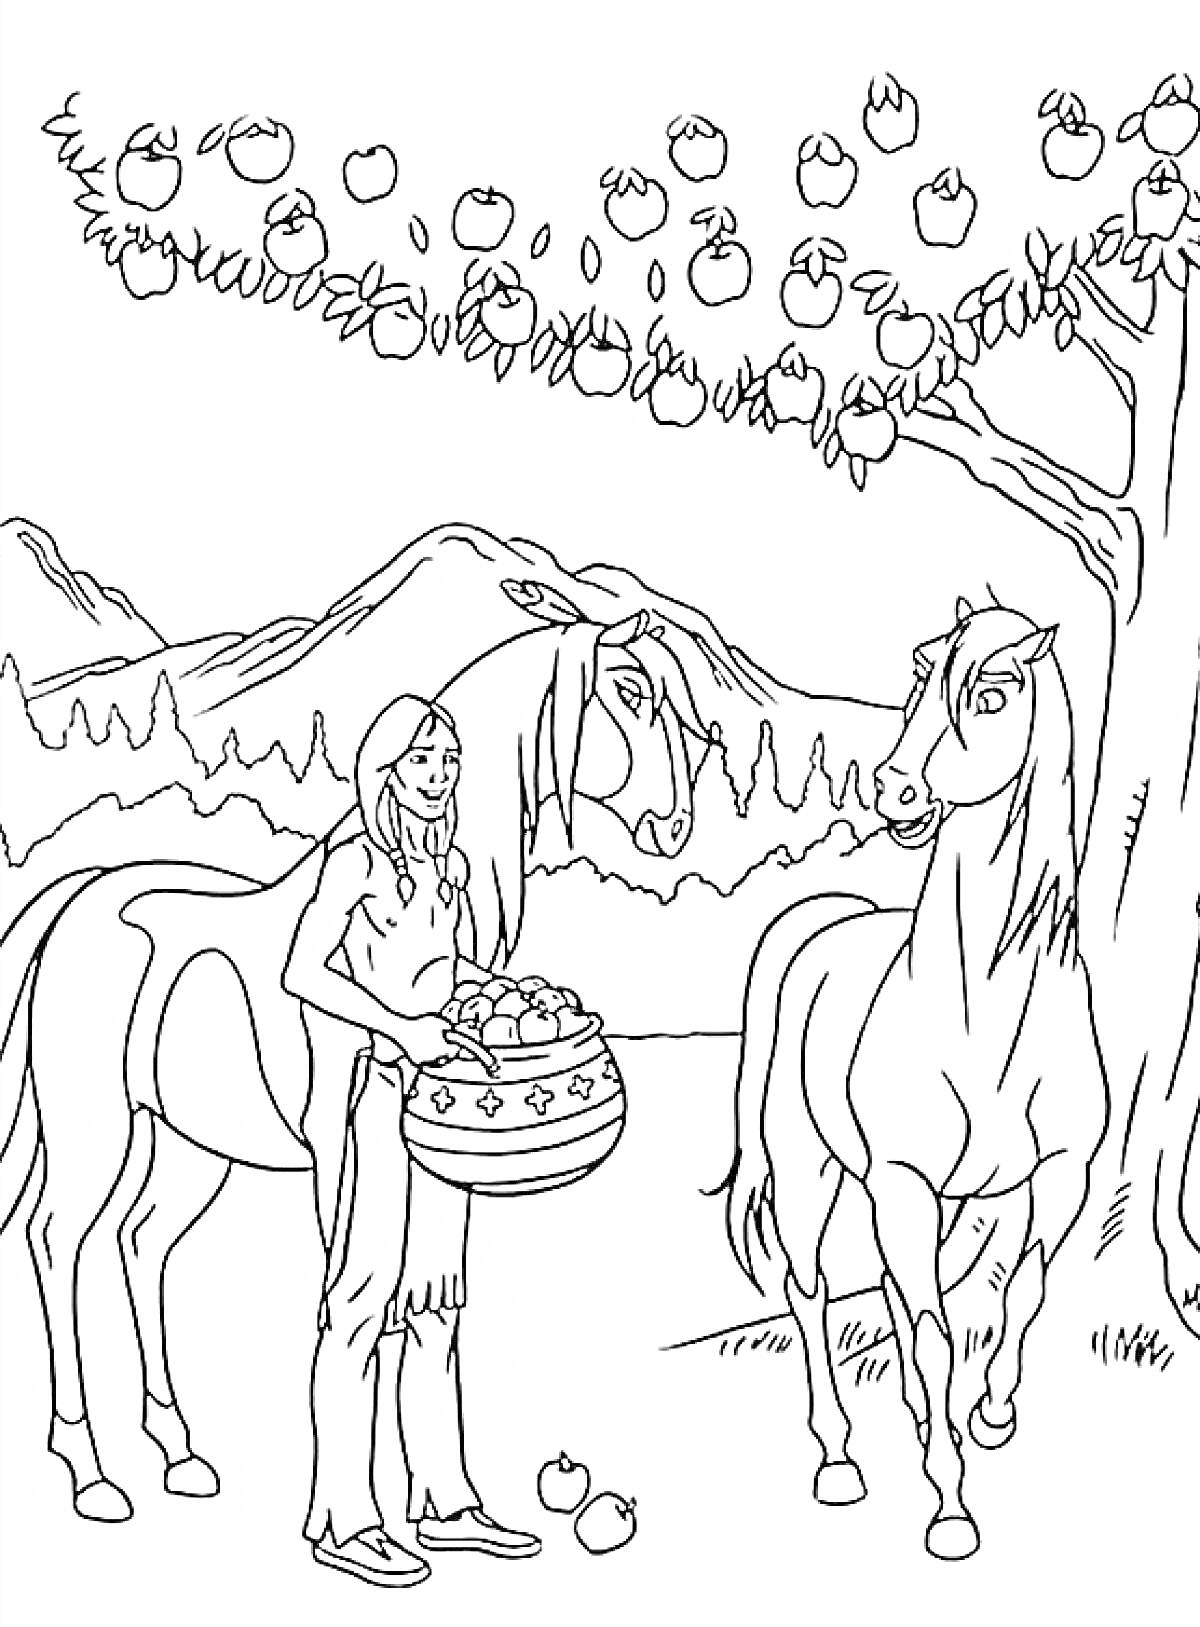 РаскраскаДевочка с корзиной яблок, стоящая рядом с двумя лошадьми под яблоней на фоне гор